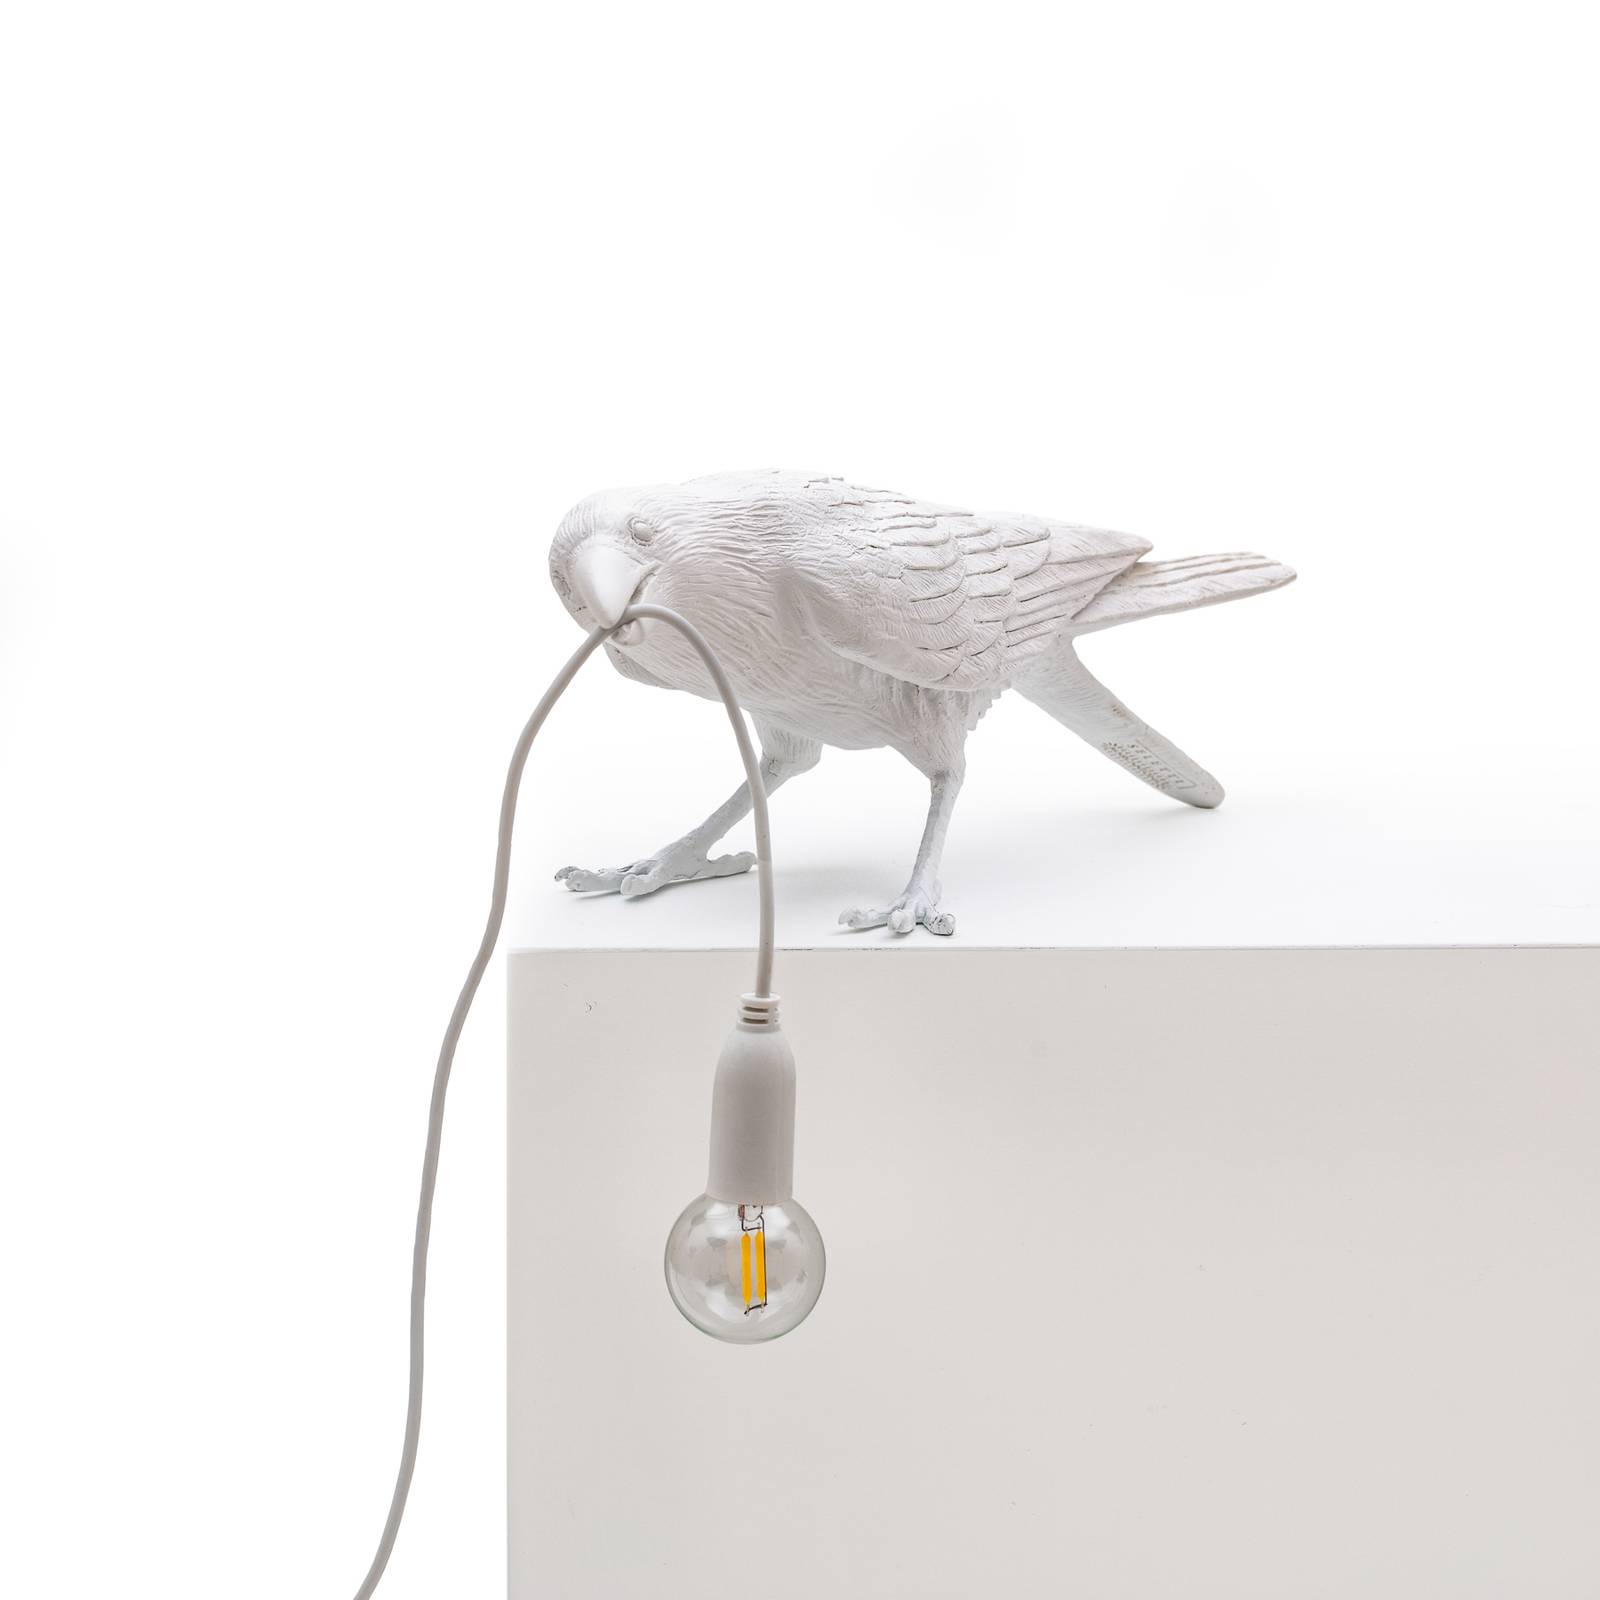 Seletti led dekor asztali világítás bird lamp, játék fehér